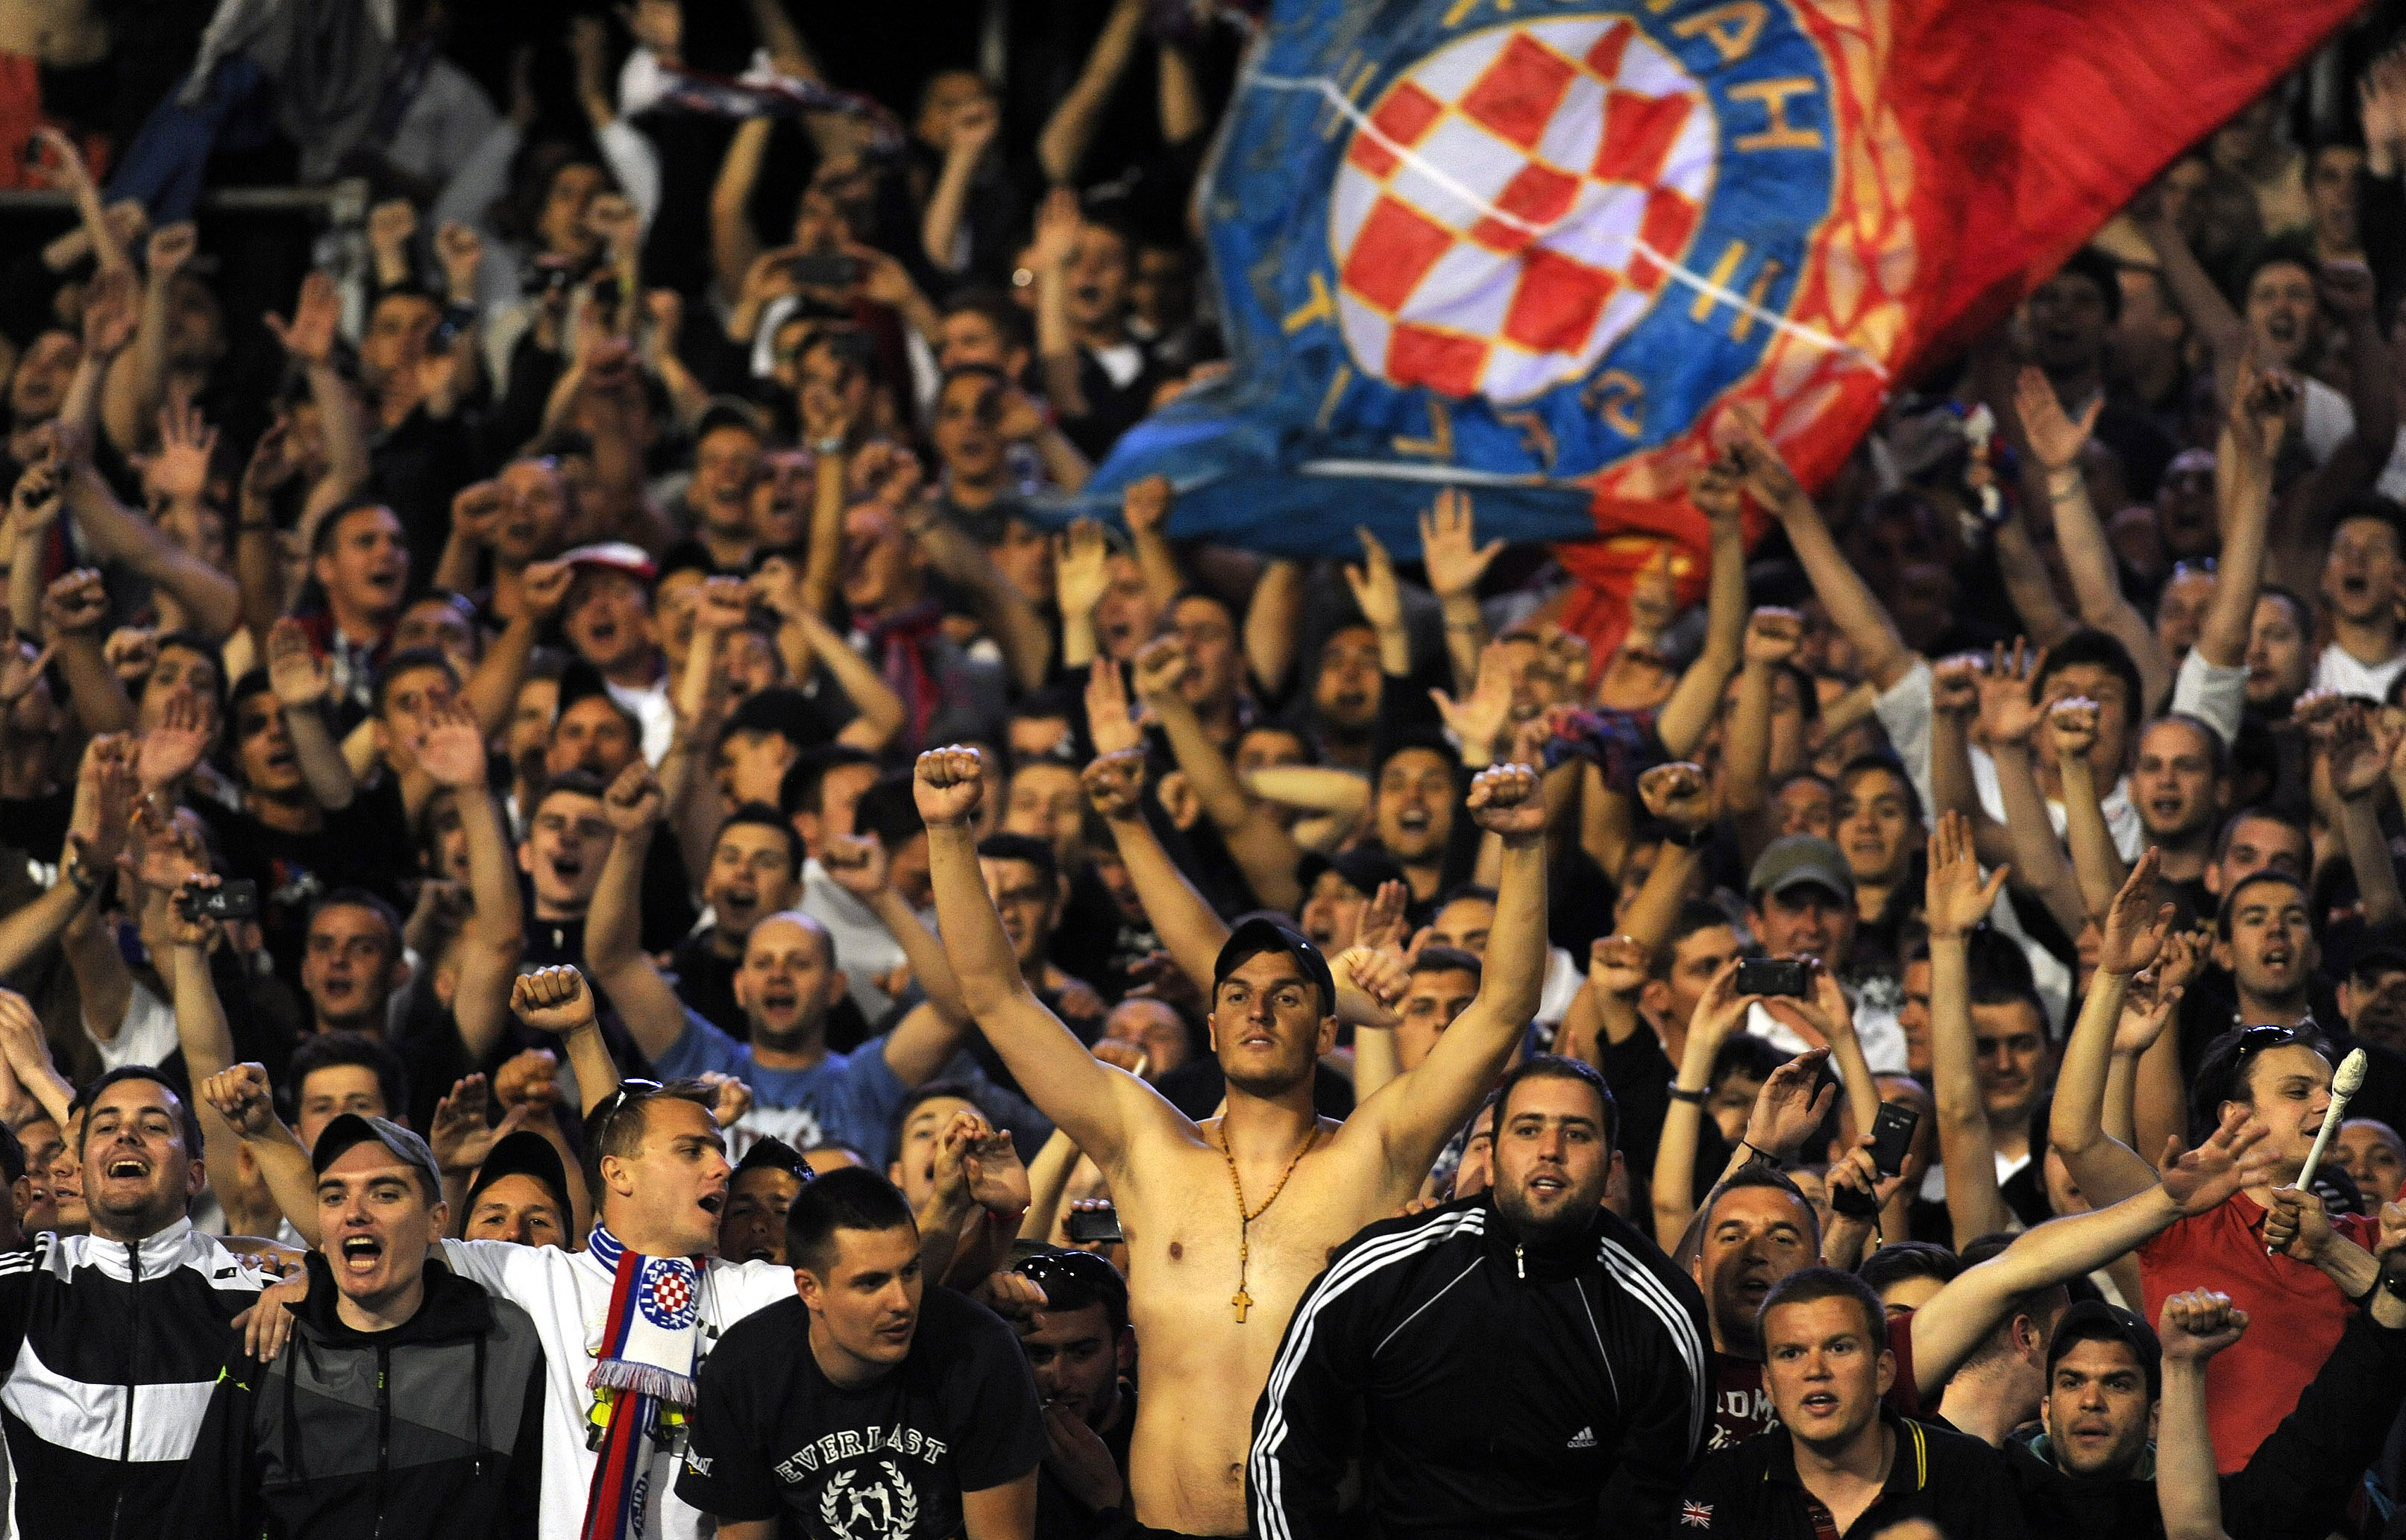 Nyolcvanöt szurkolót vette őrizetbe a rendőrség a horvát-magyar meccsen -  Blikk